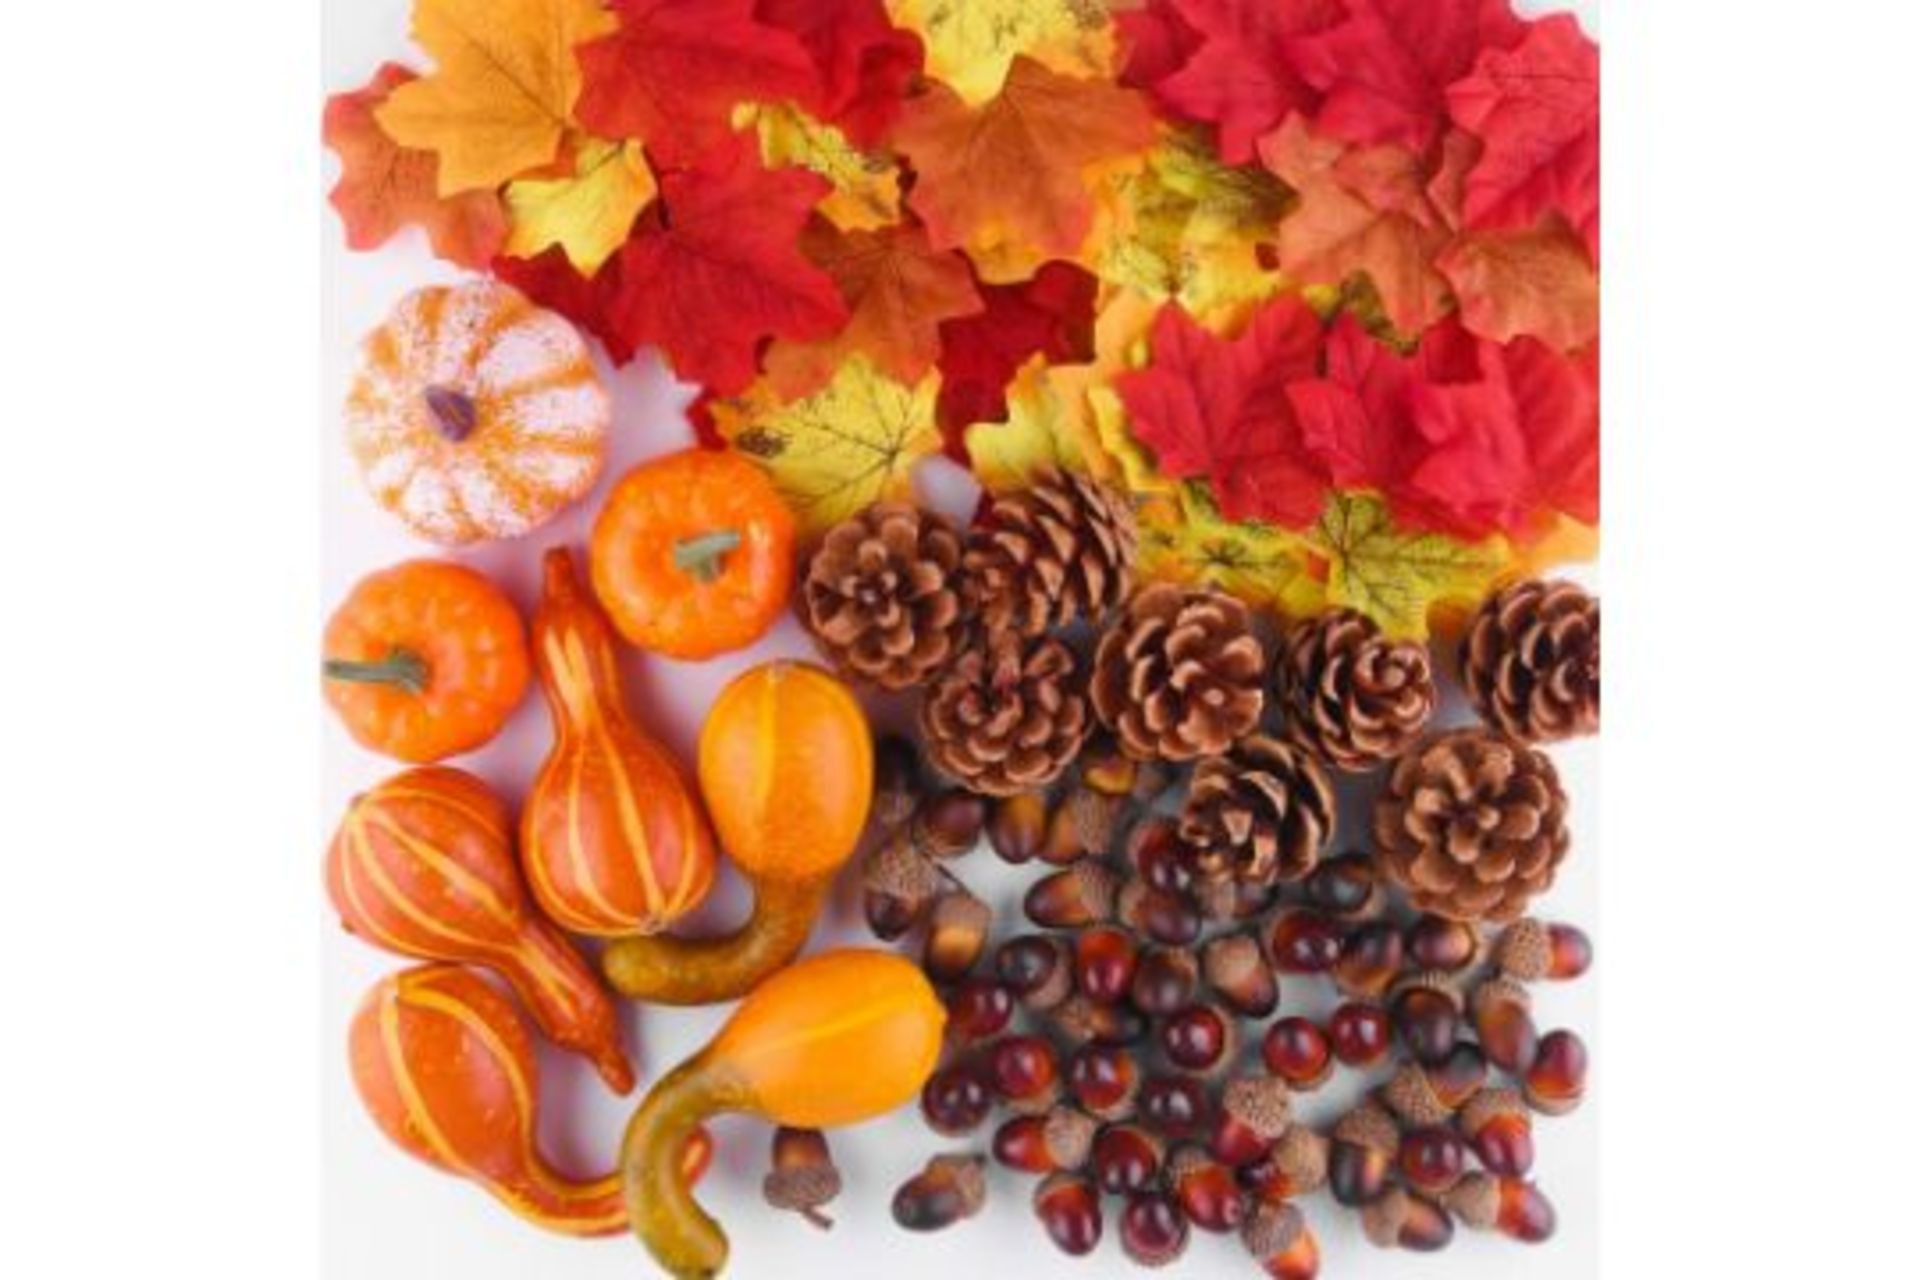 10 X FFEPITO 96 Pcs Fall Thanksgiving Decorations, Mini Artificial Pumpkins, Pine Cones,